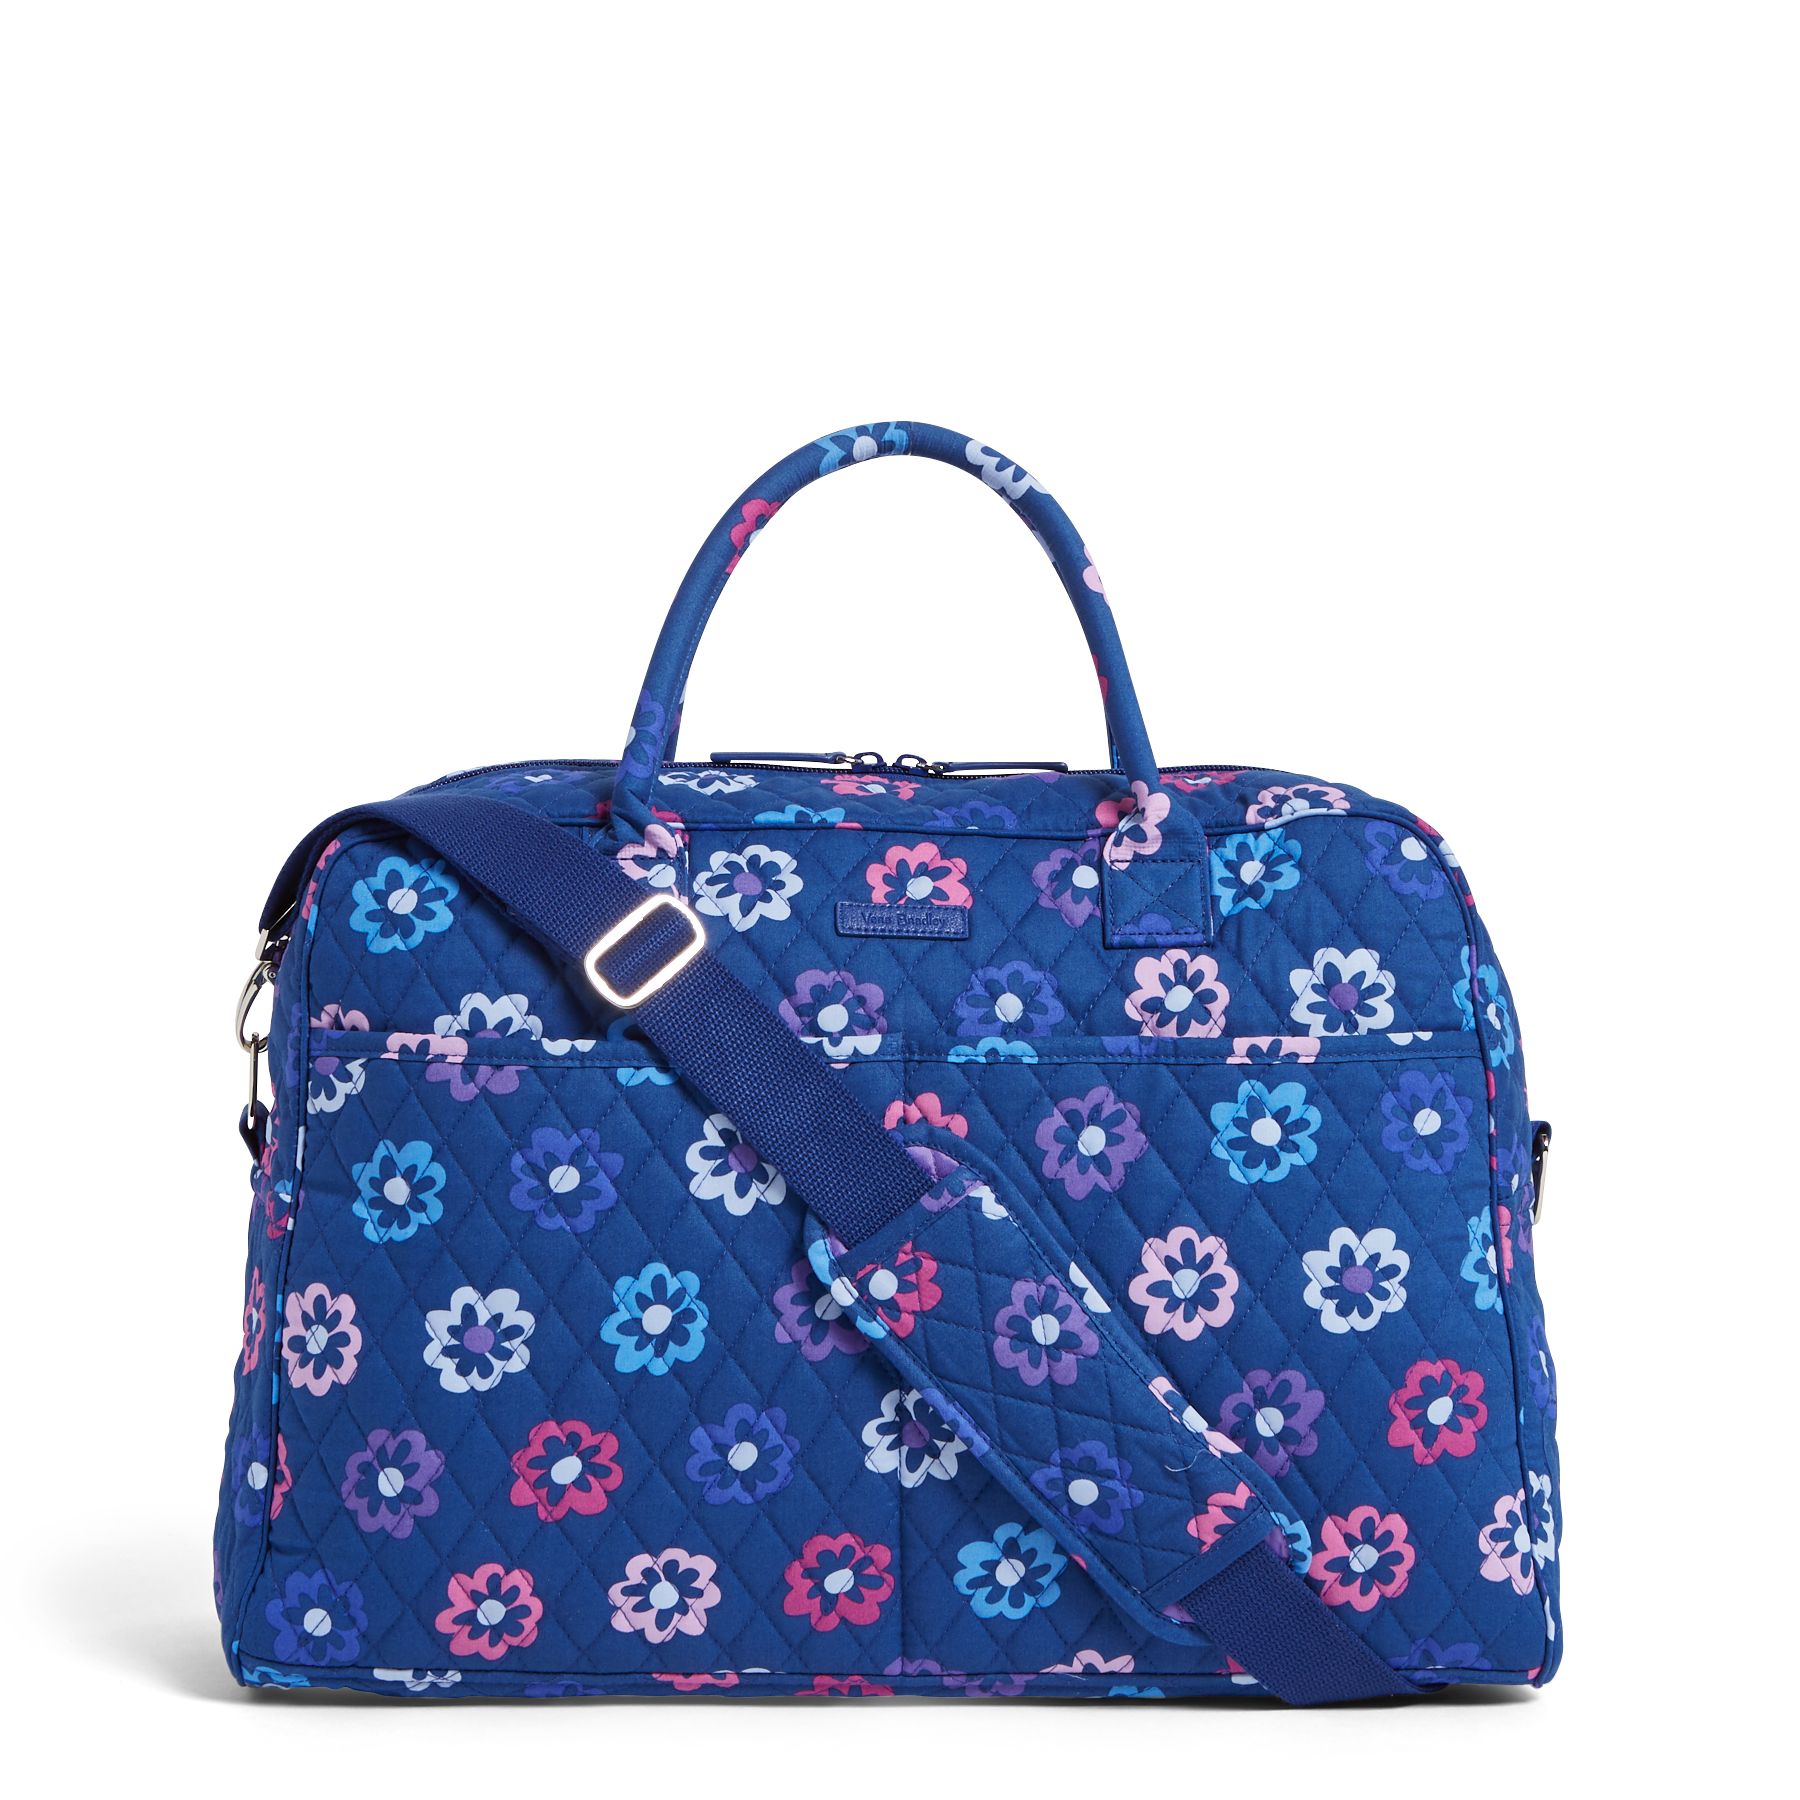 Vera Bradley Factory Weekender Travel Bag in Ellie Flowers for sale ...